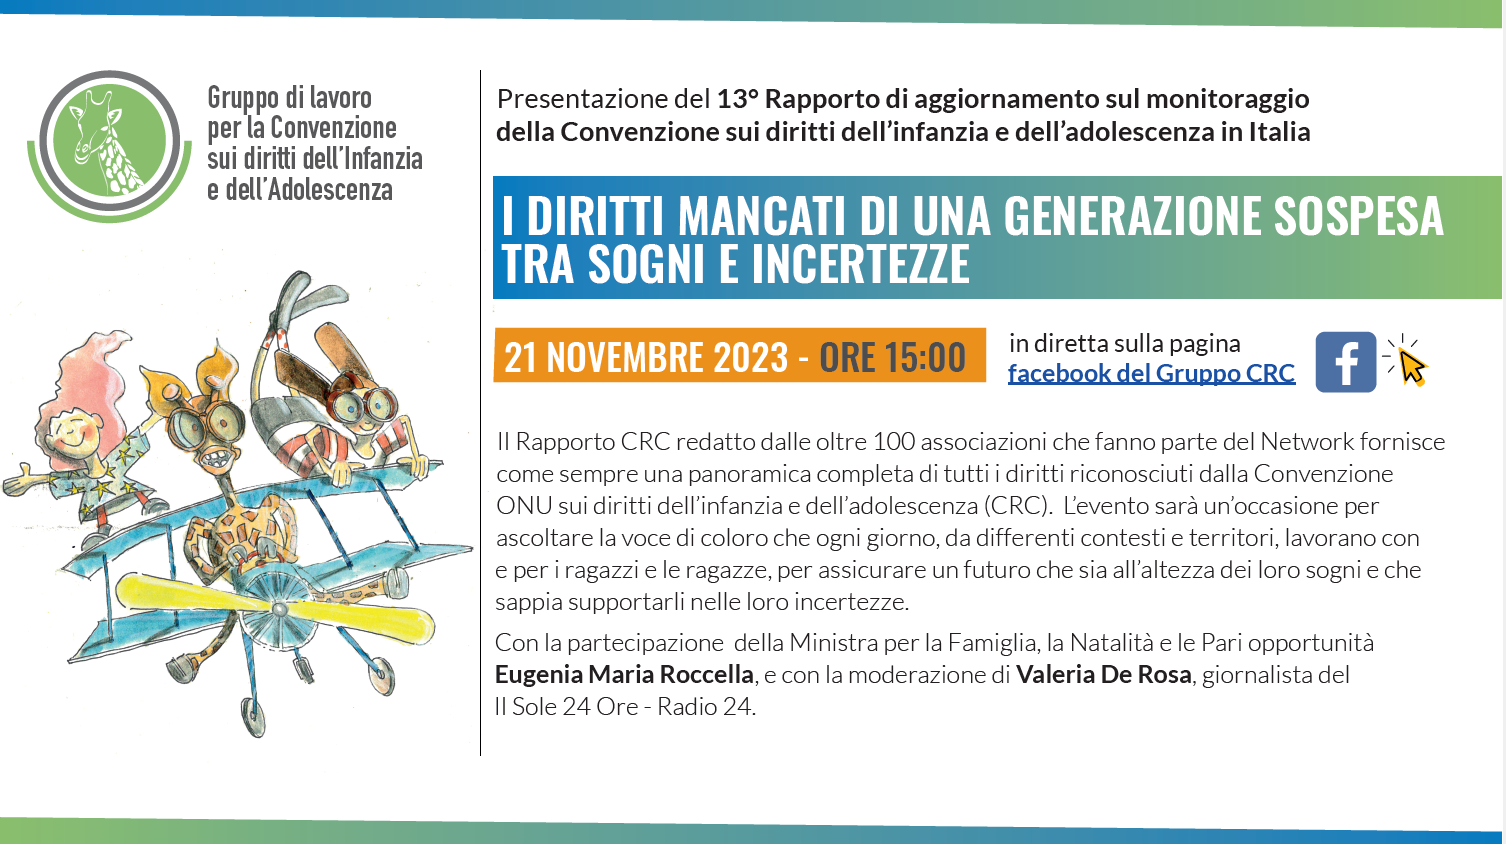 Presentazione del 13° Rapporto di aggiornamento sul monitoraggio della Convenzione sui diritti dell’infanzia e dell’adolescenza in Italia